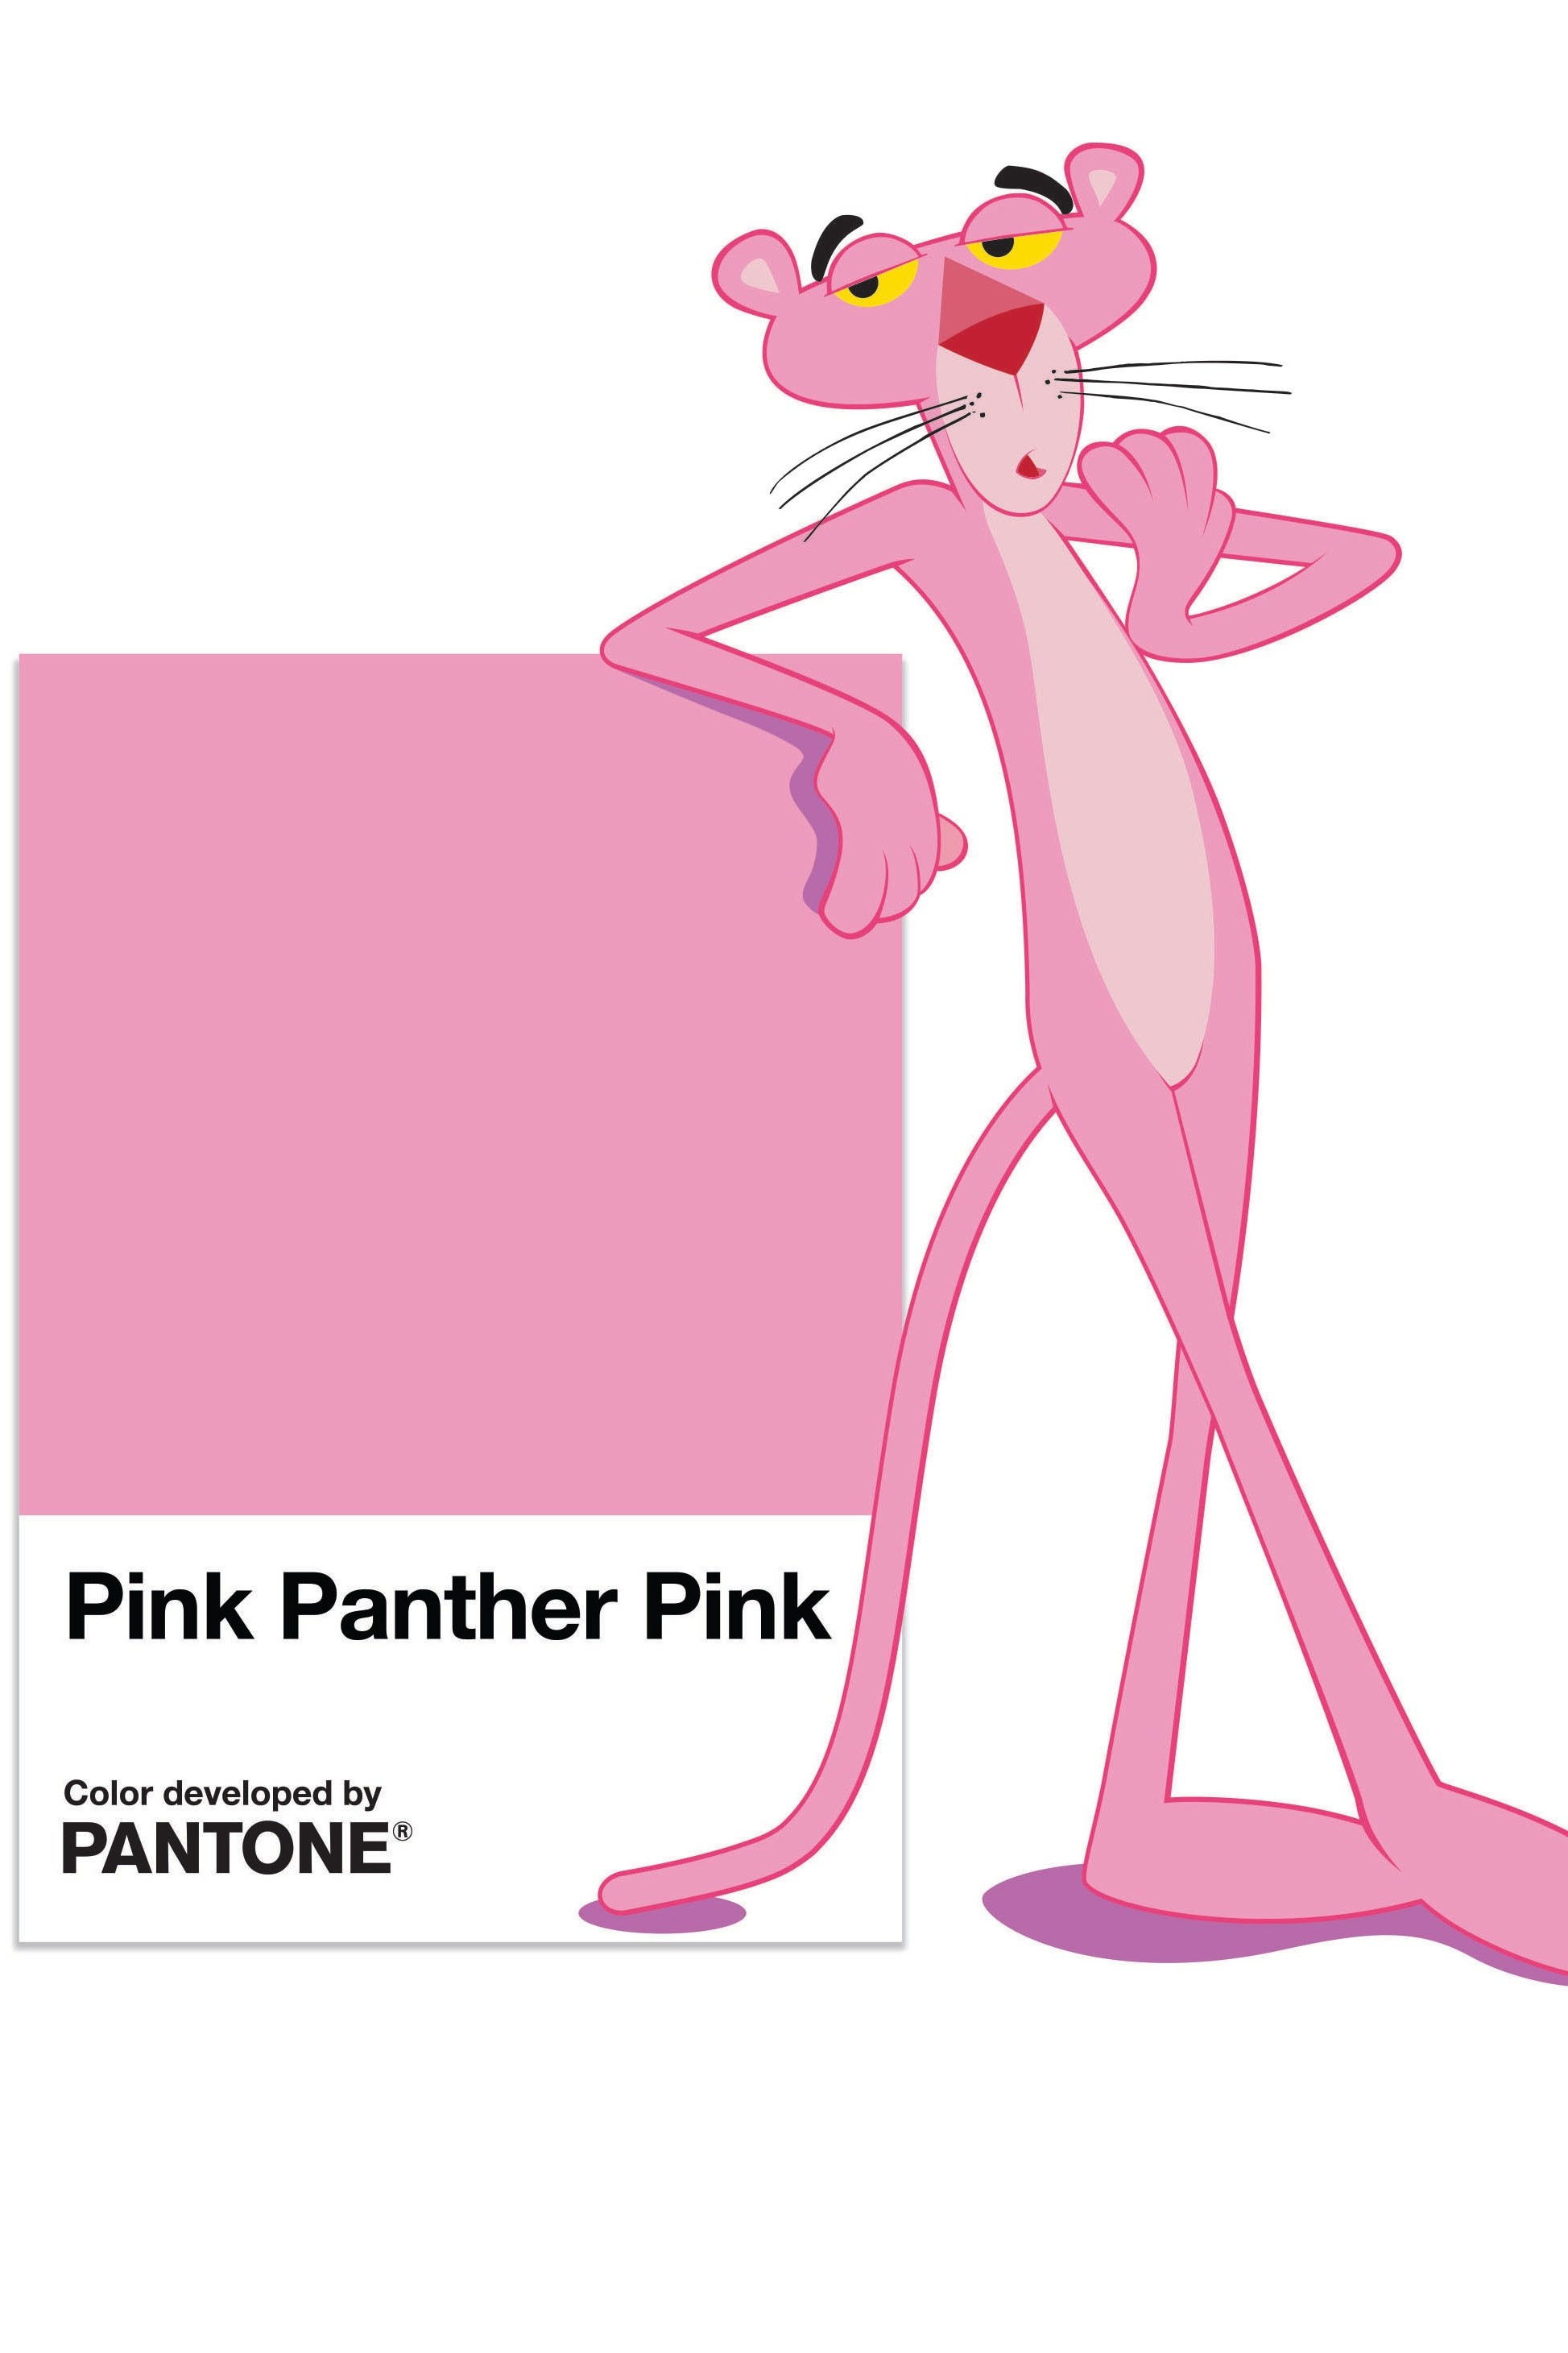 破天荒 Pantone最新色是 粉紅豹 背後由來超暖心 Et Fashion Ettoday新聞雲